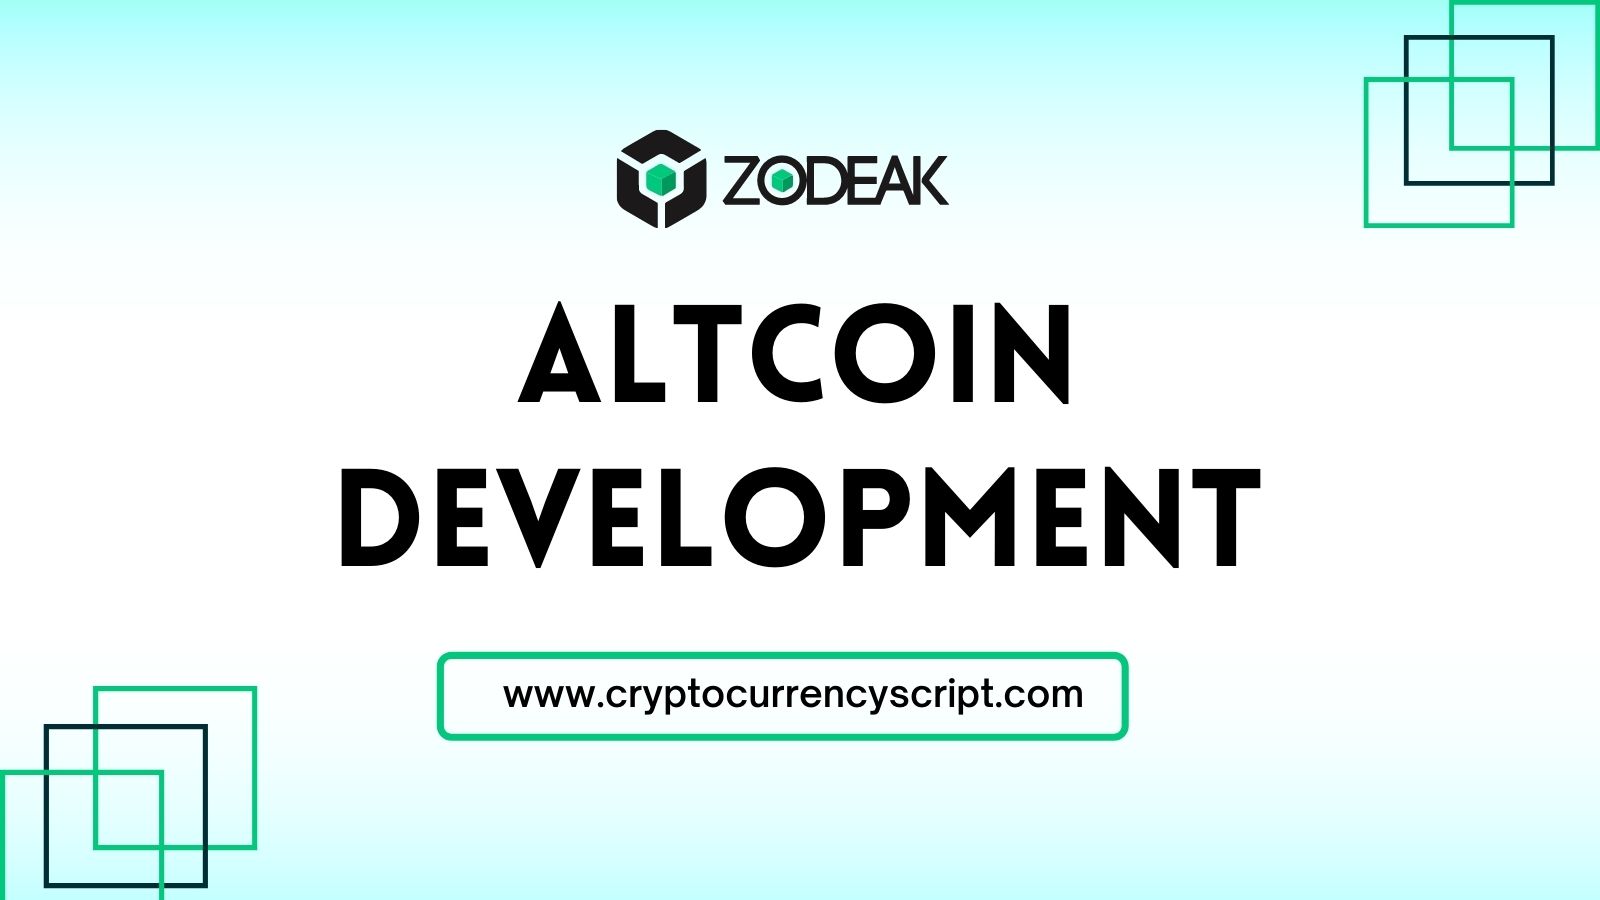 Altcoin Development Services | Crypto coin creation | Zodeak